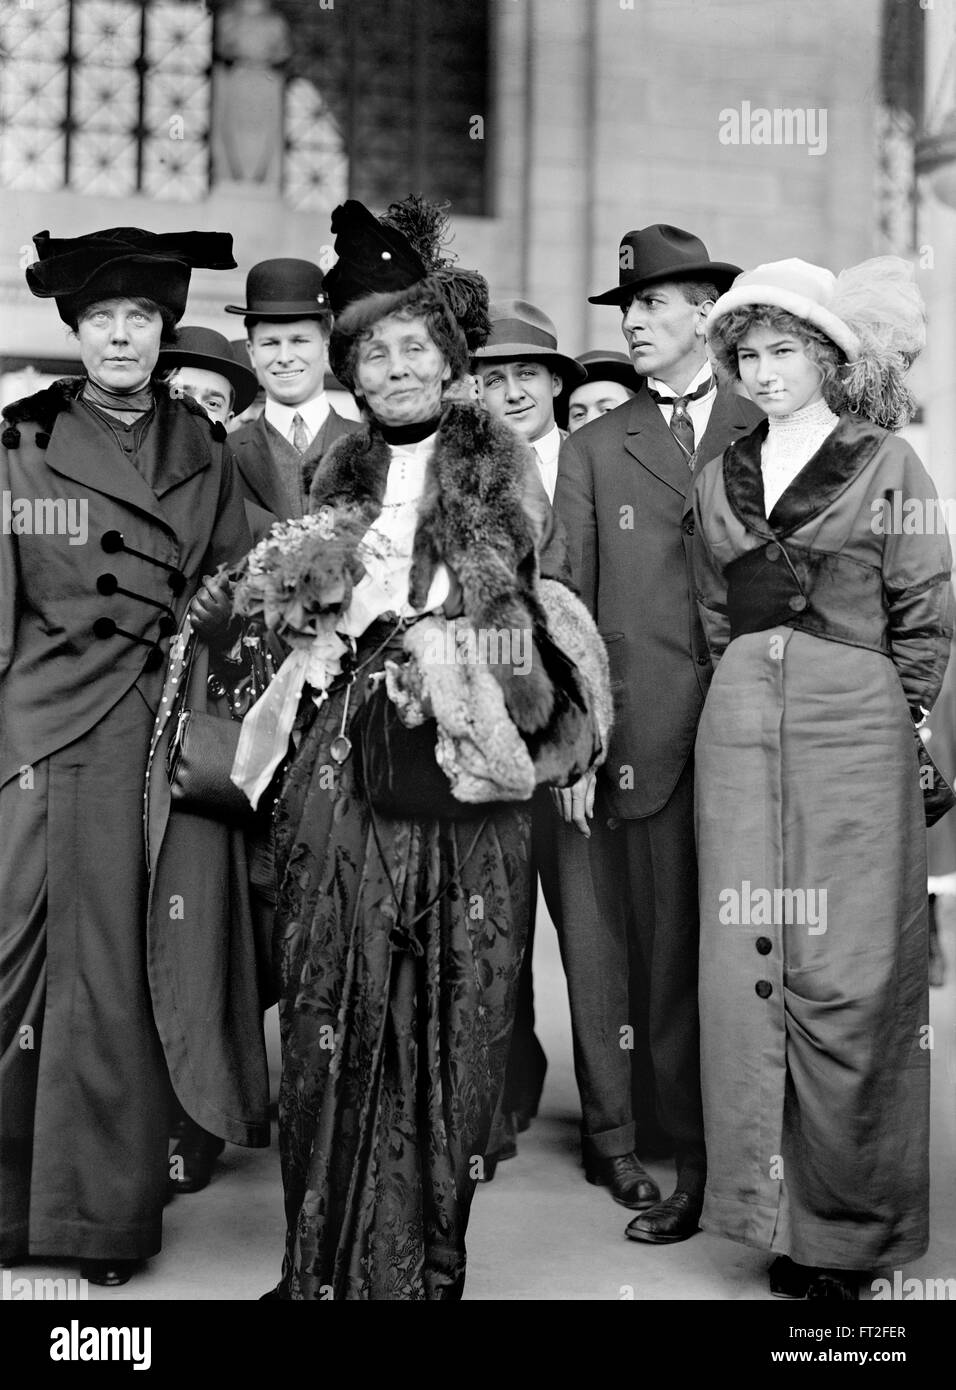 Mme Emmeline Pankhurst (centre), chef du mouvement des suffragettes britanniques, avec l'American women's rights activist, Lucy Burns, à sa droite. Photo c.1913 Banque D'Images